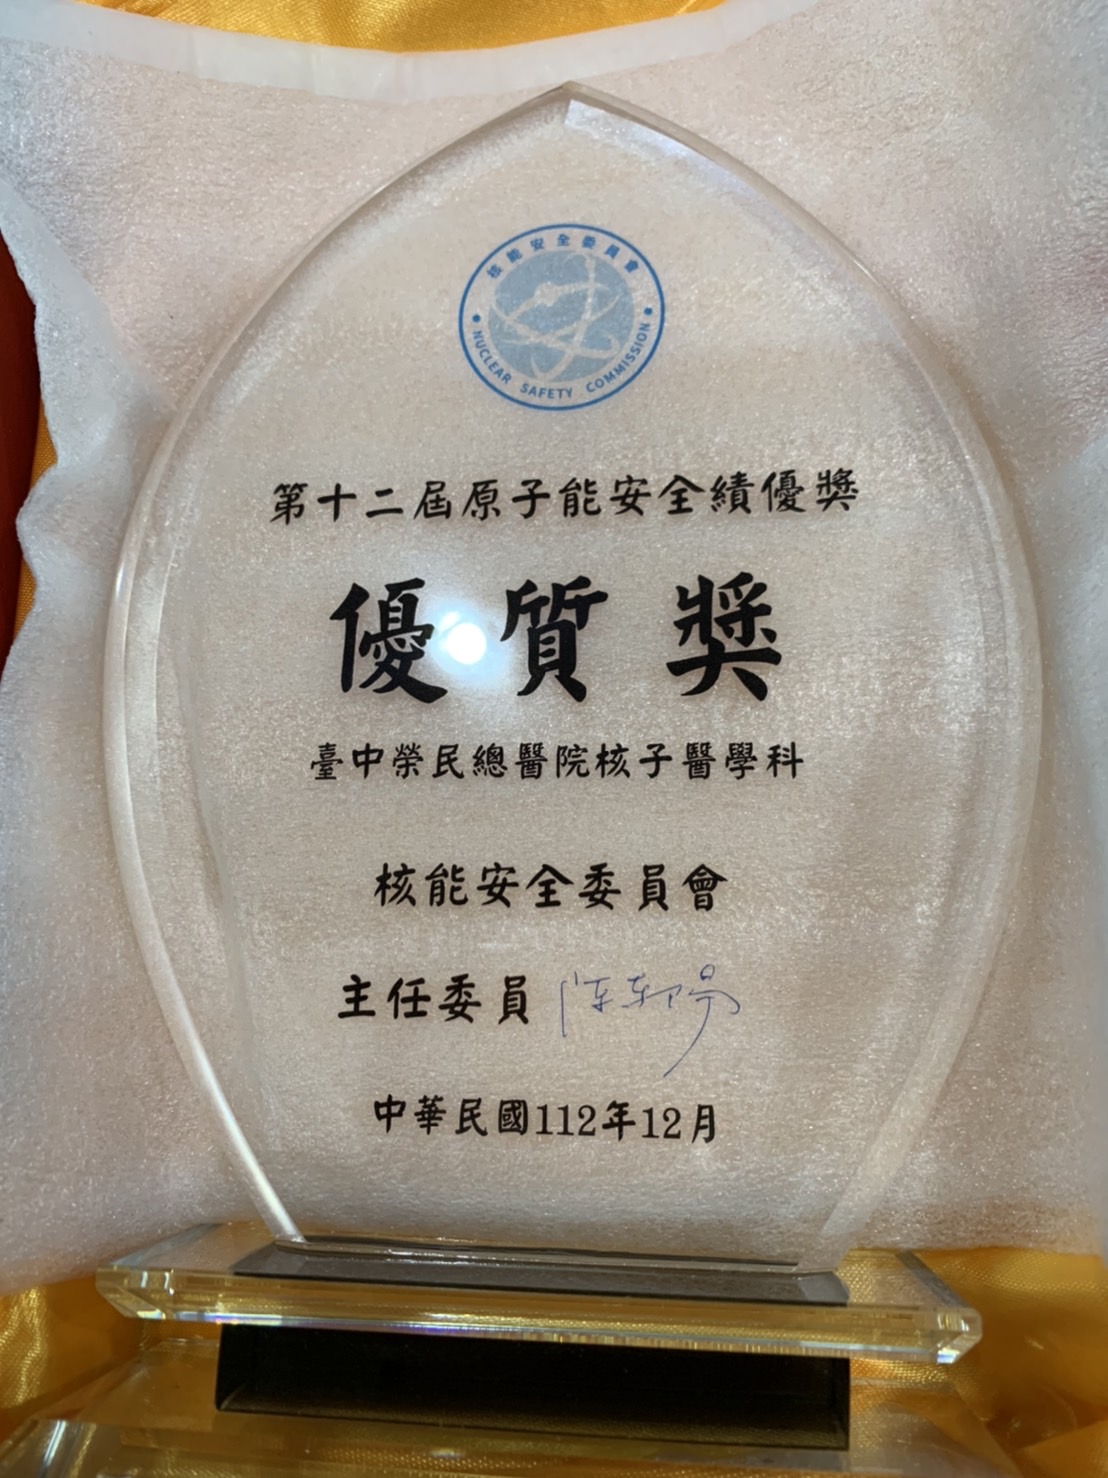 榮獲112年度核能安全委員會第 12 屆原子能安全績優獎競賽「優質獎」 